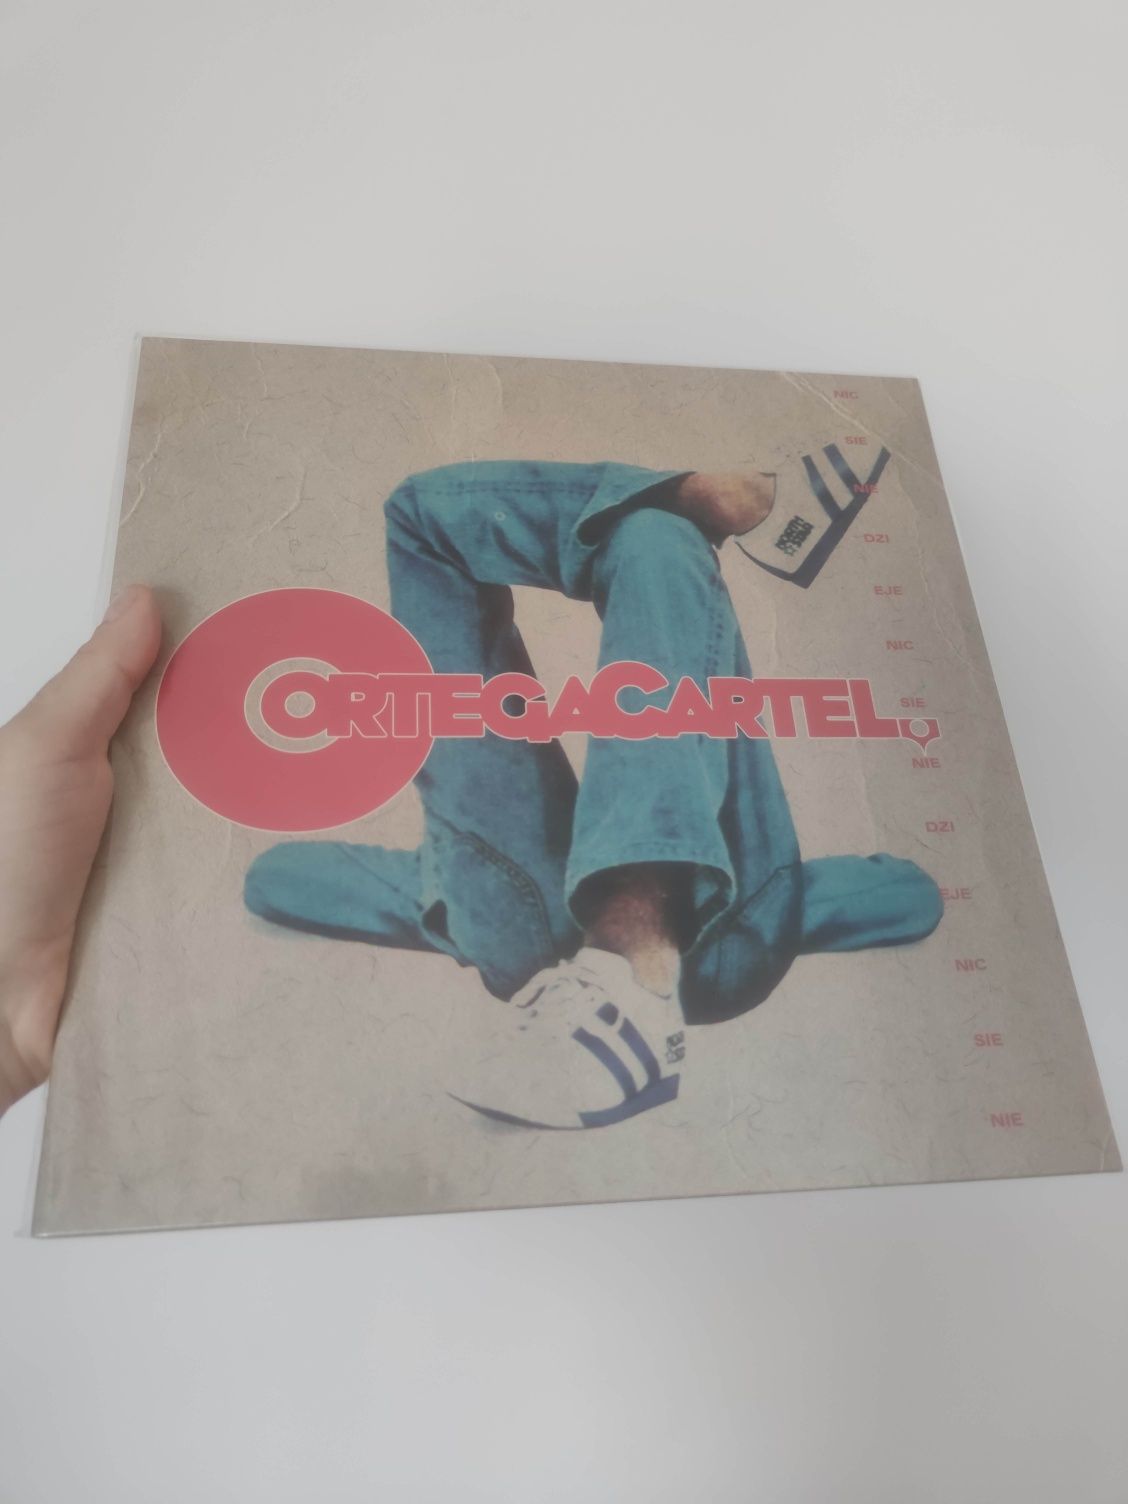 Ortega Cartel - Nic Się Nie Dzieje 2LP vinyl nowy w folii / Lavorama